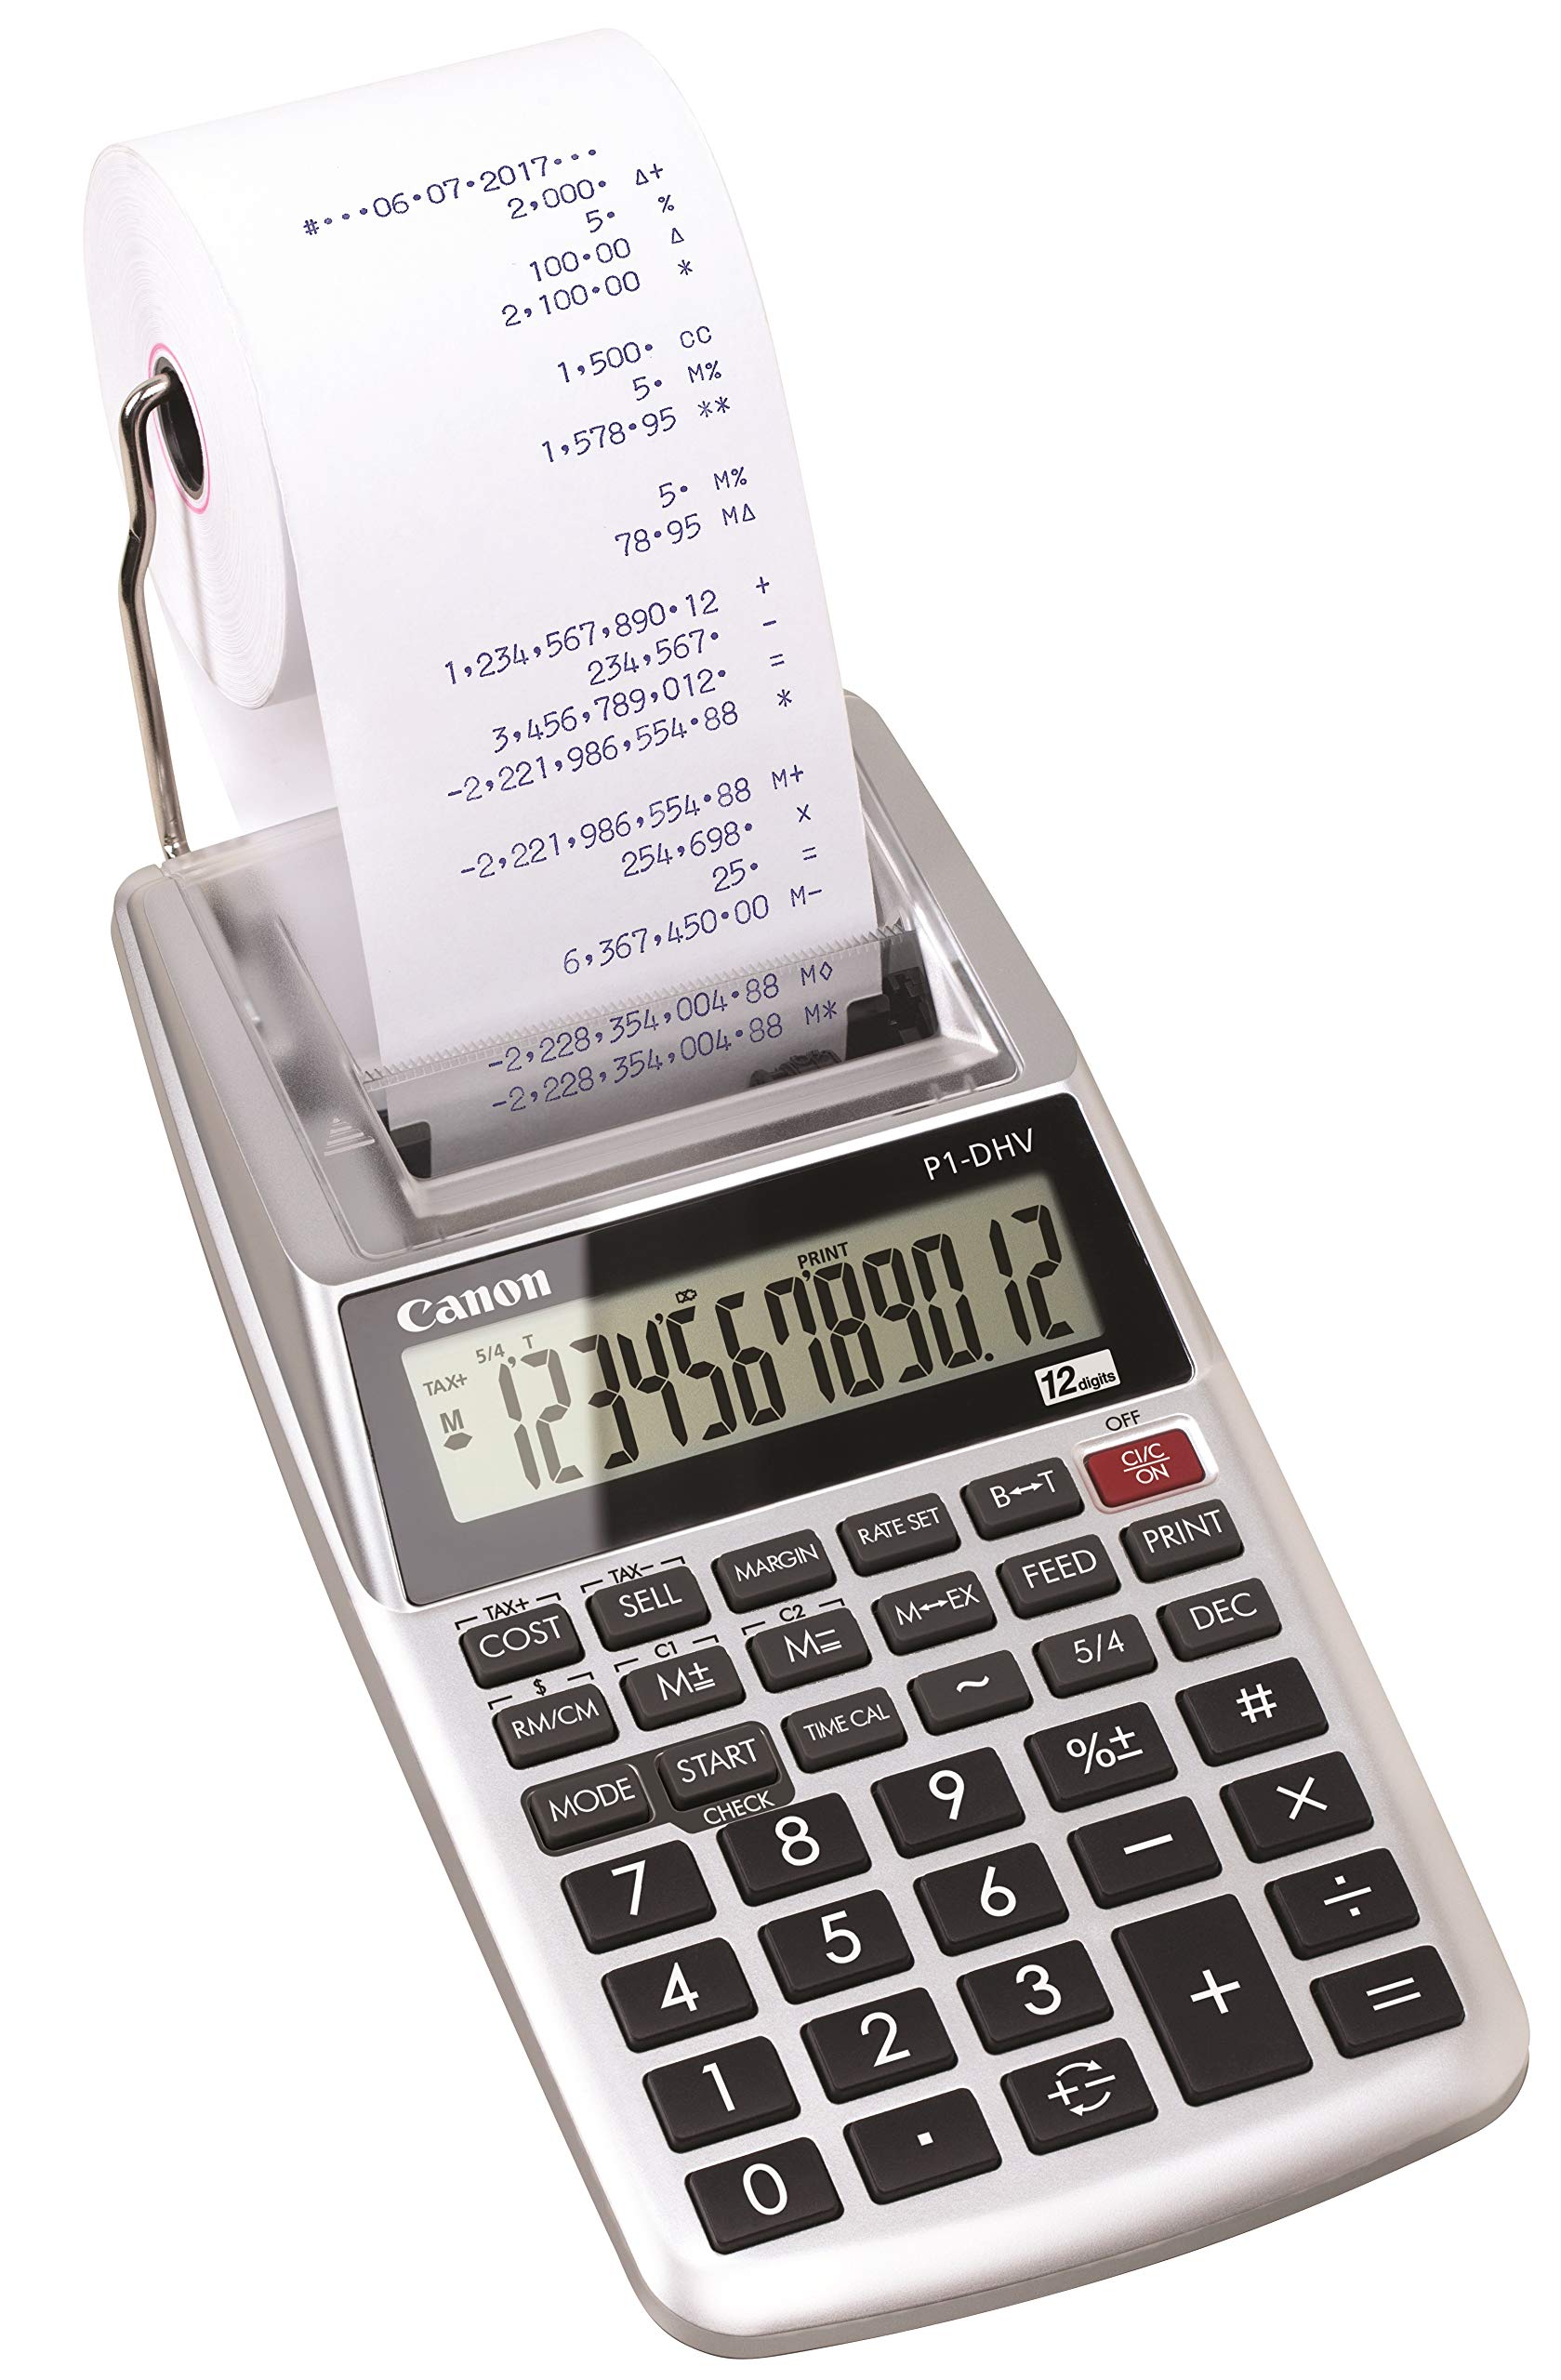 Canon P1-DHV-3 Printer Calculator Formula Type